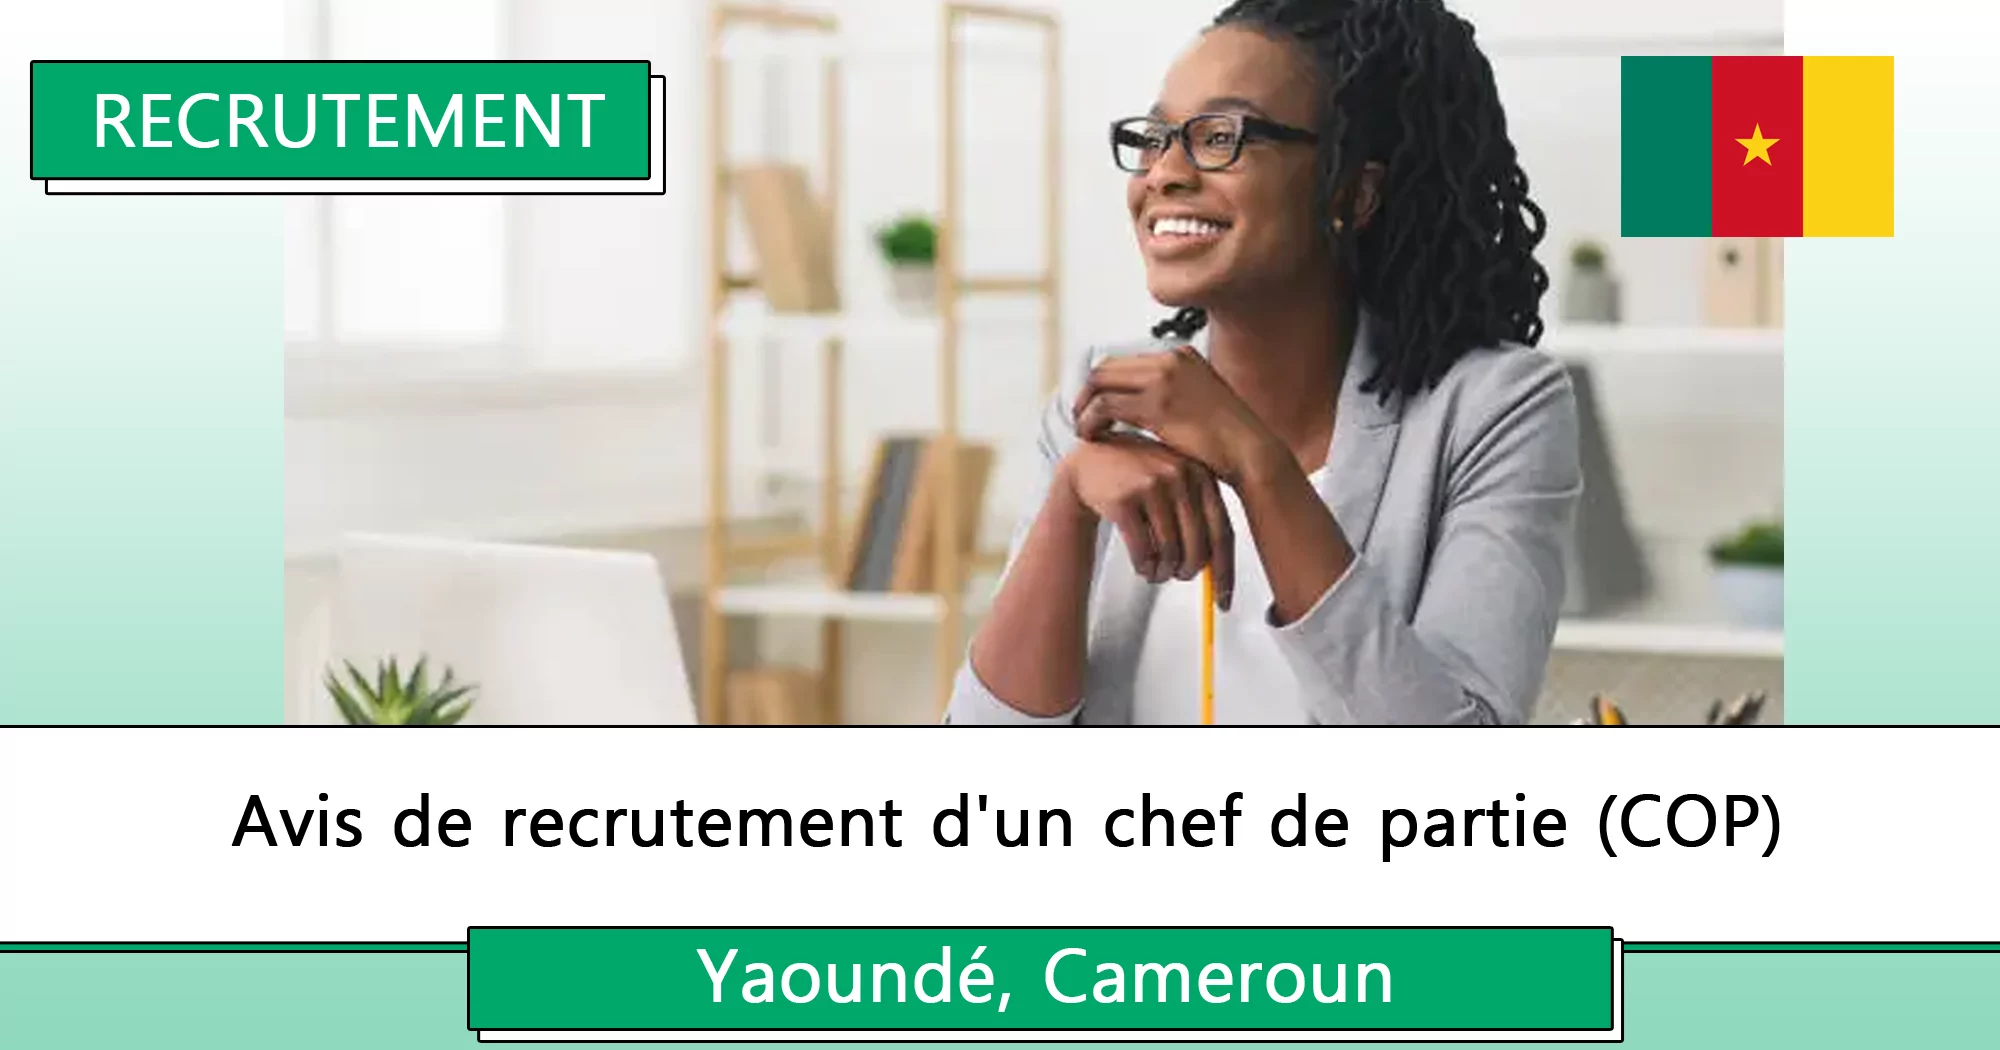 Avis de recrutement d’un chef de partie (COP), Yaoundé, Cameroun